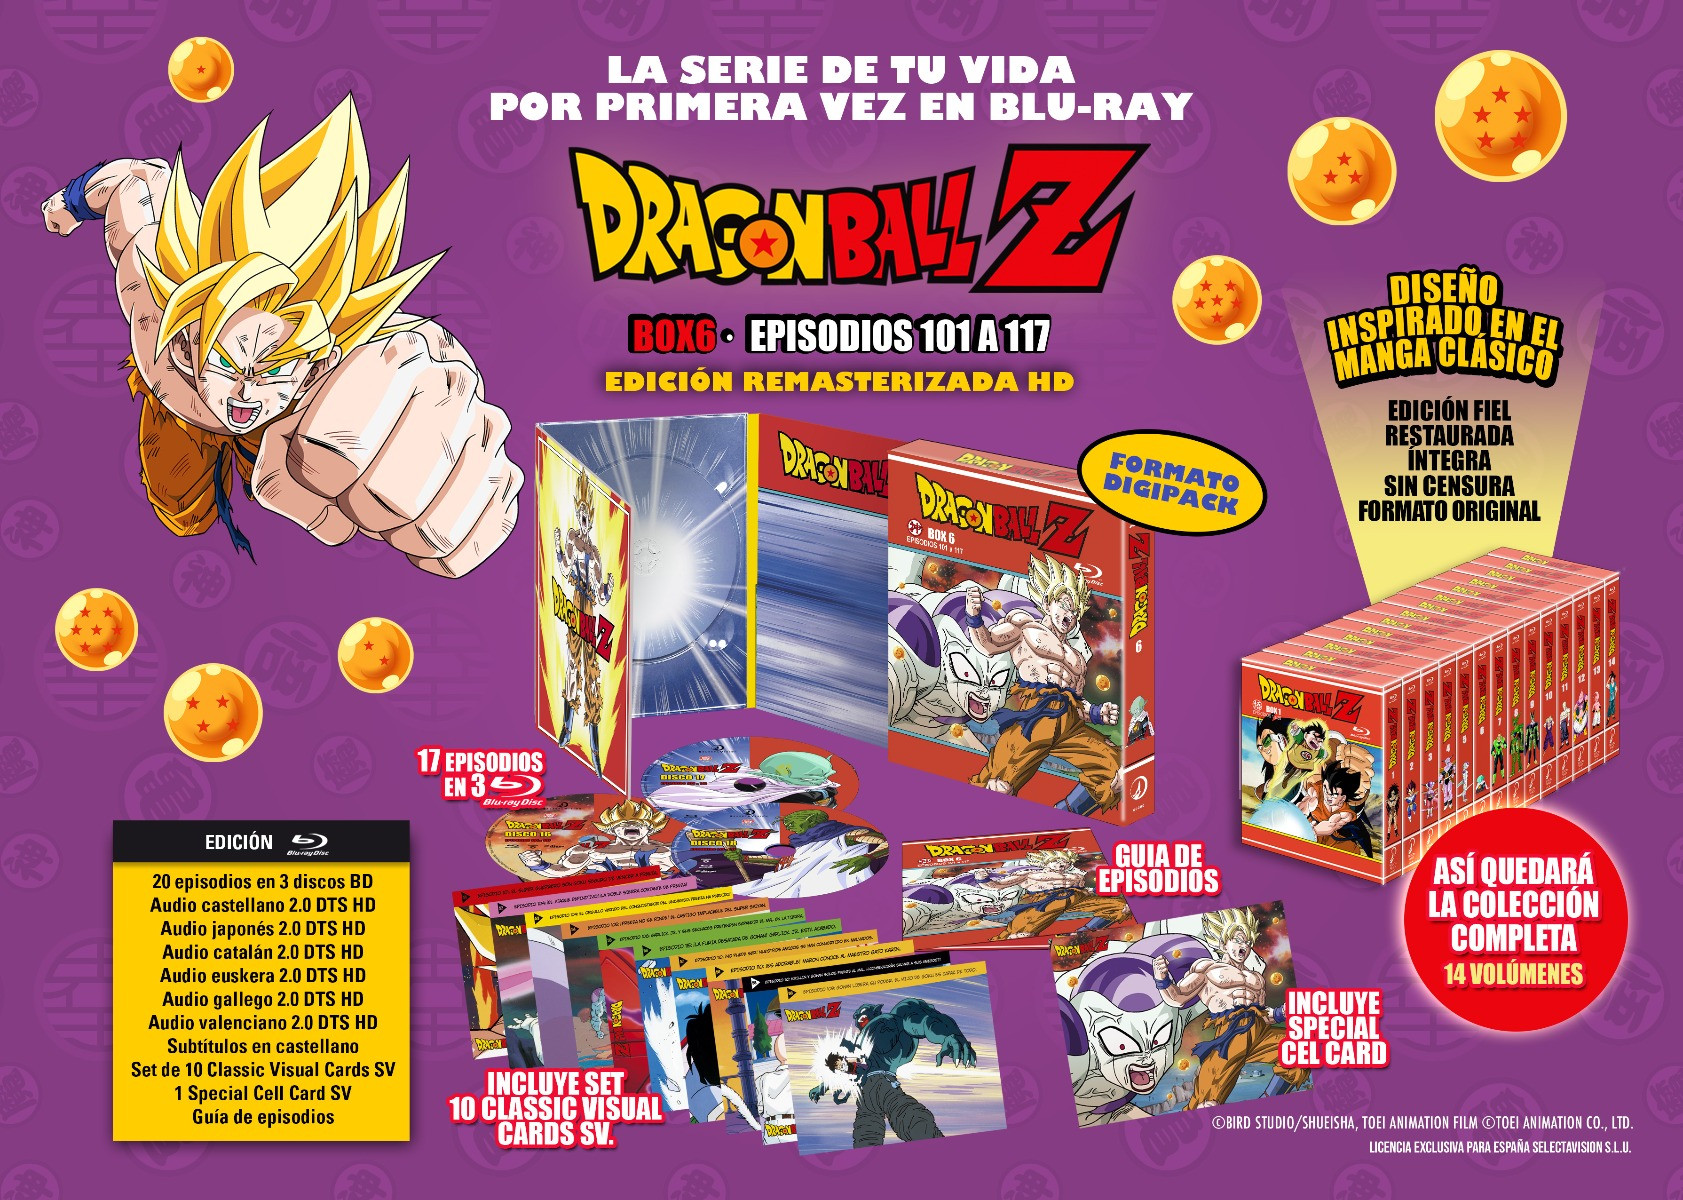 Dragon Ball Z - Portada y fecha de lanzamiento del Box 6 de la 